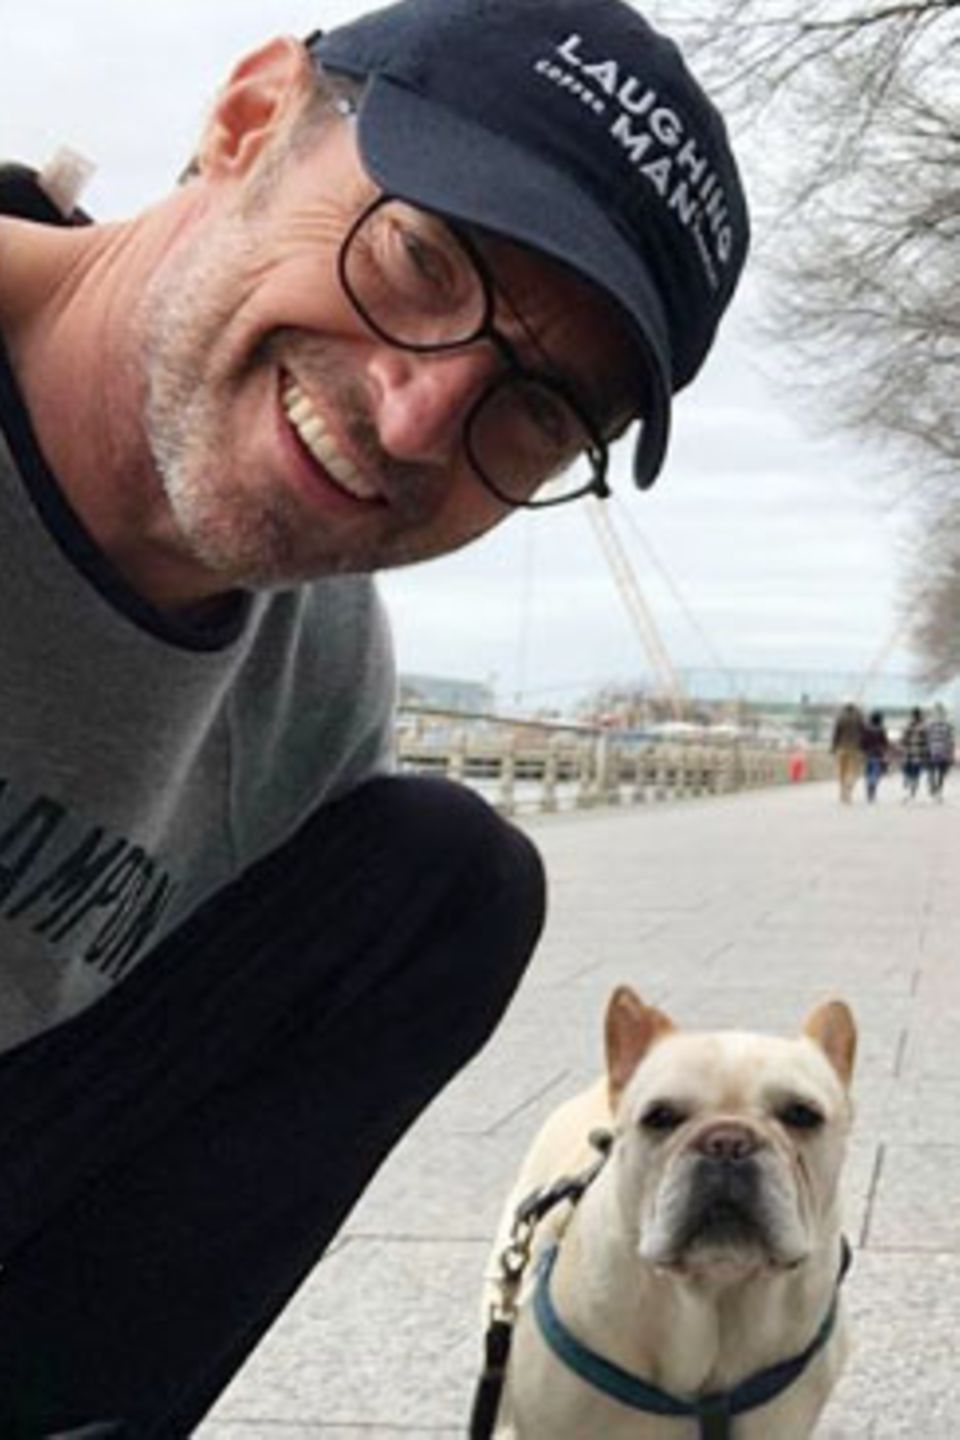 Hugh Jackman genießt seine freie Zeit, um endlich mal wieder mit Hund Dali zu spazieren. Und zum sonntäglichen Ausflug gehört natürlich auch ein gemeinsames Selfie.